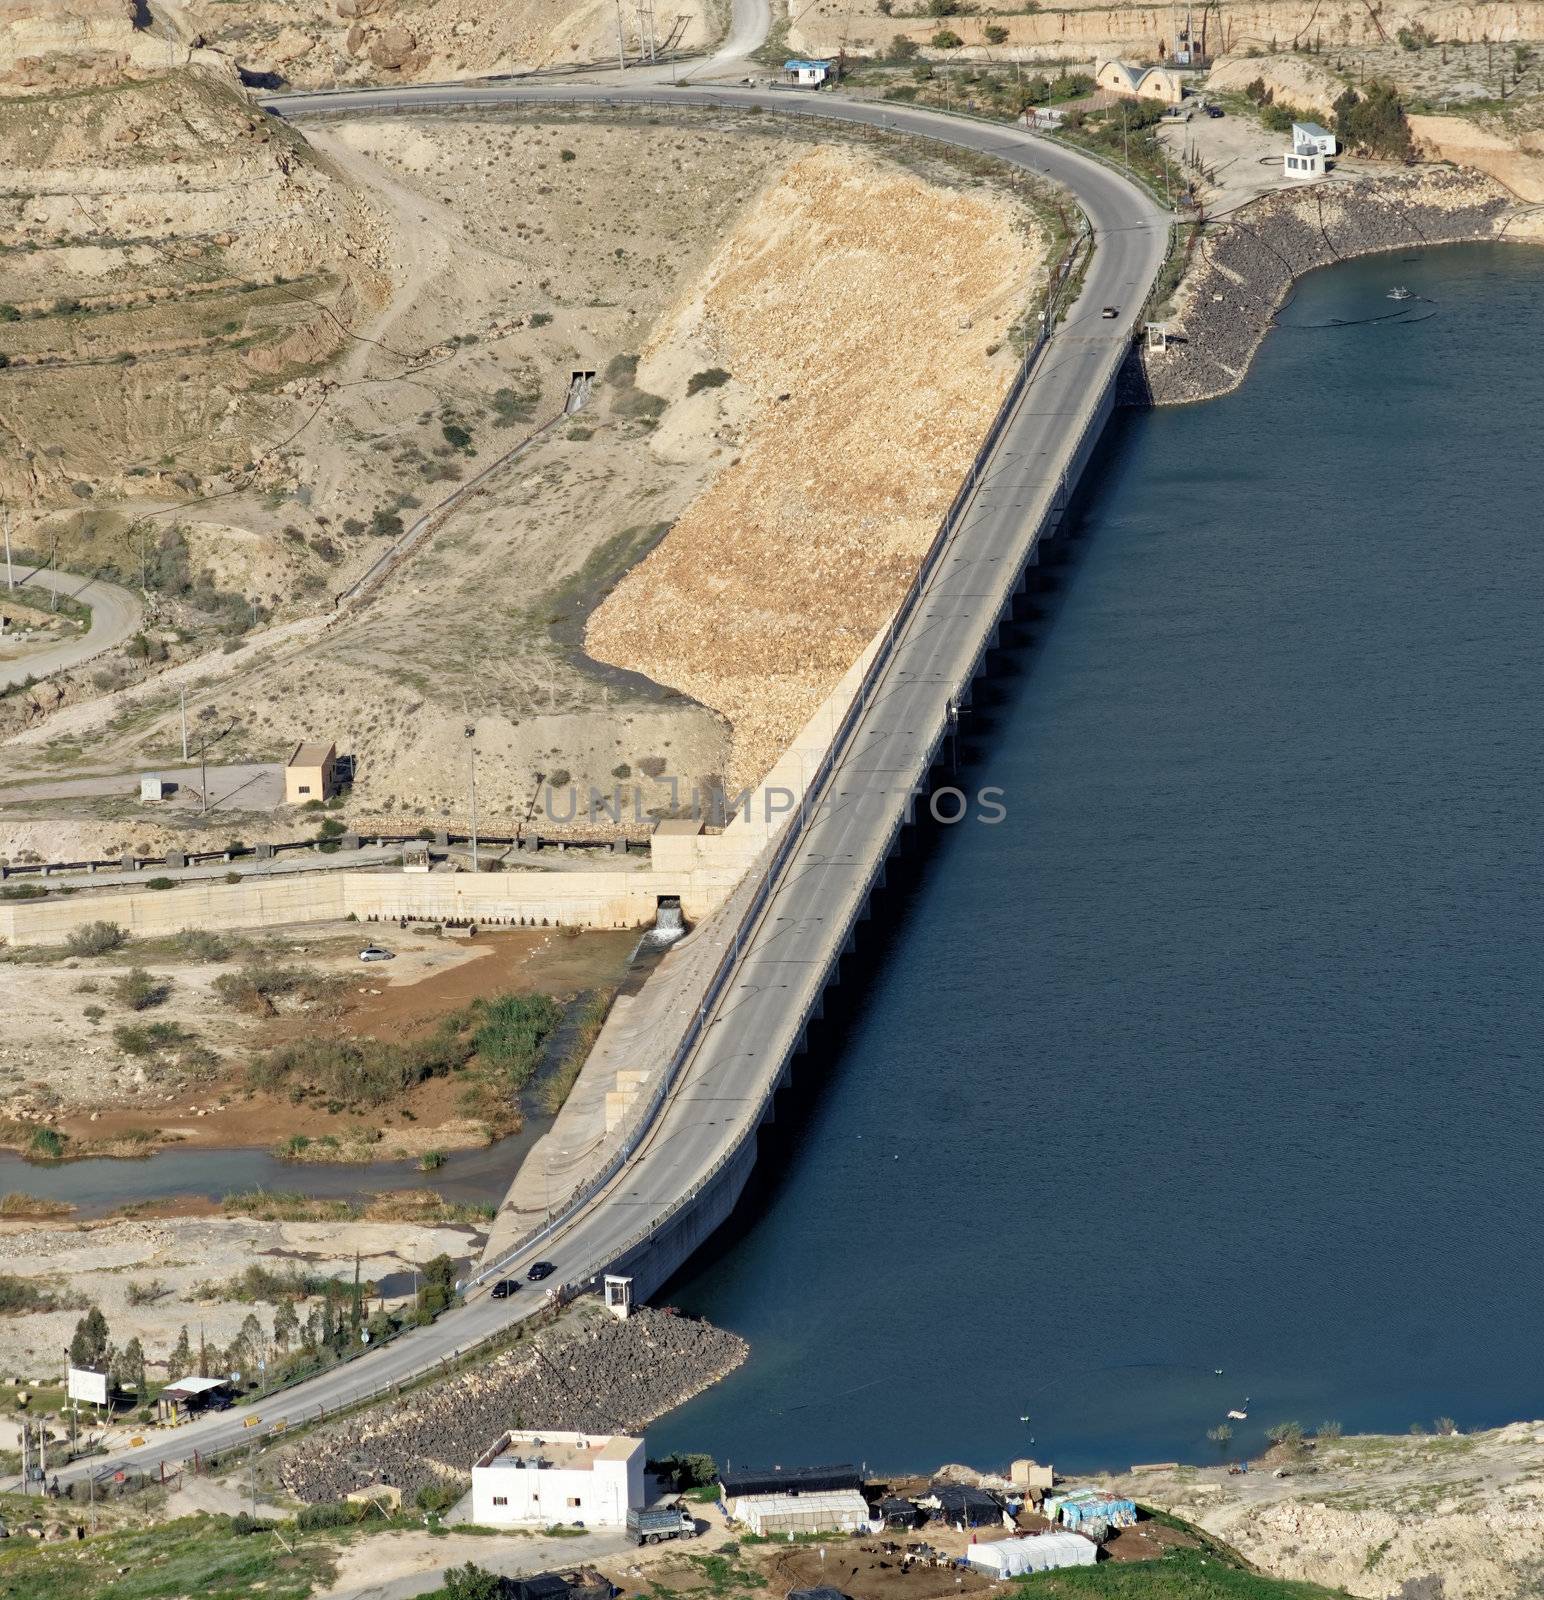 Wadi Mujib dam with a road for public transport in Jordan by geogif